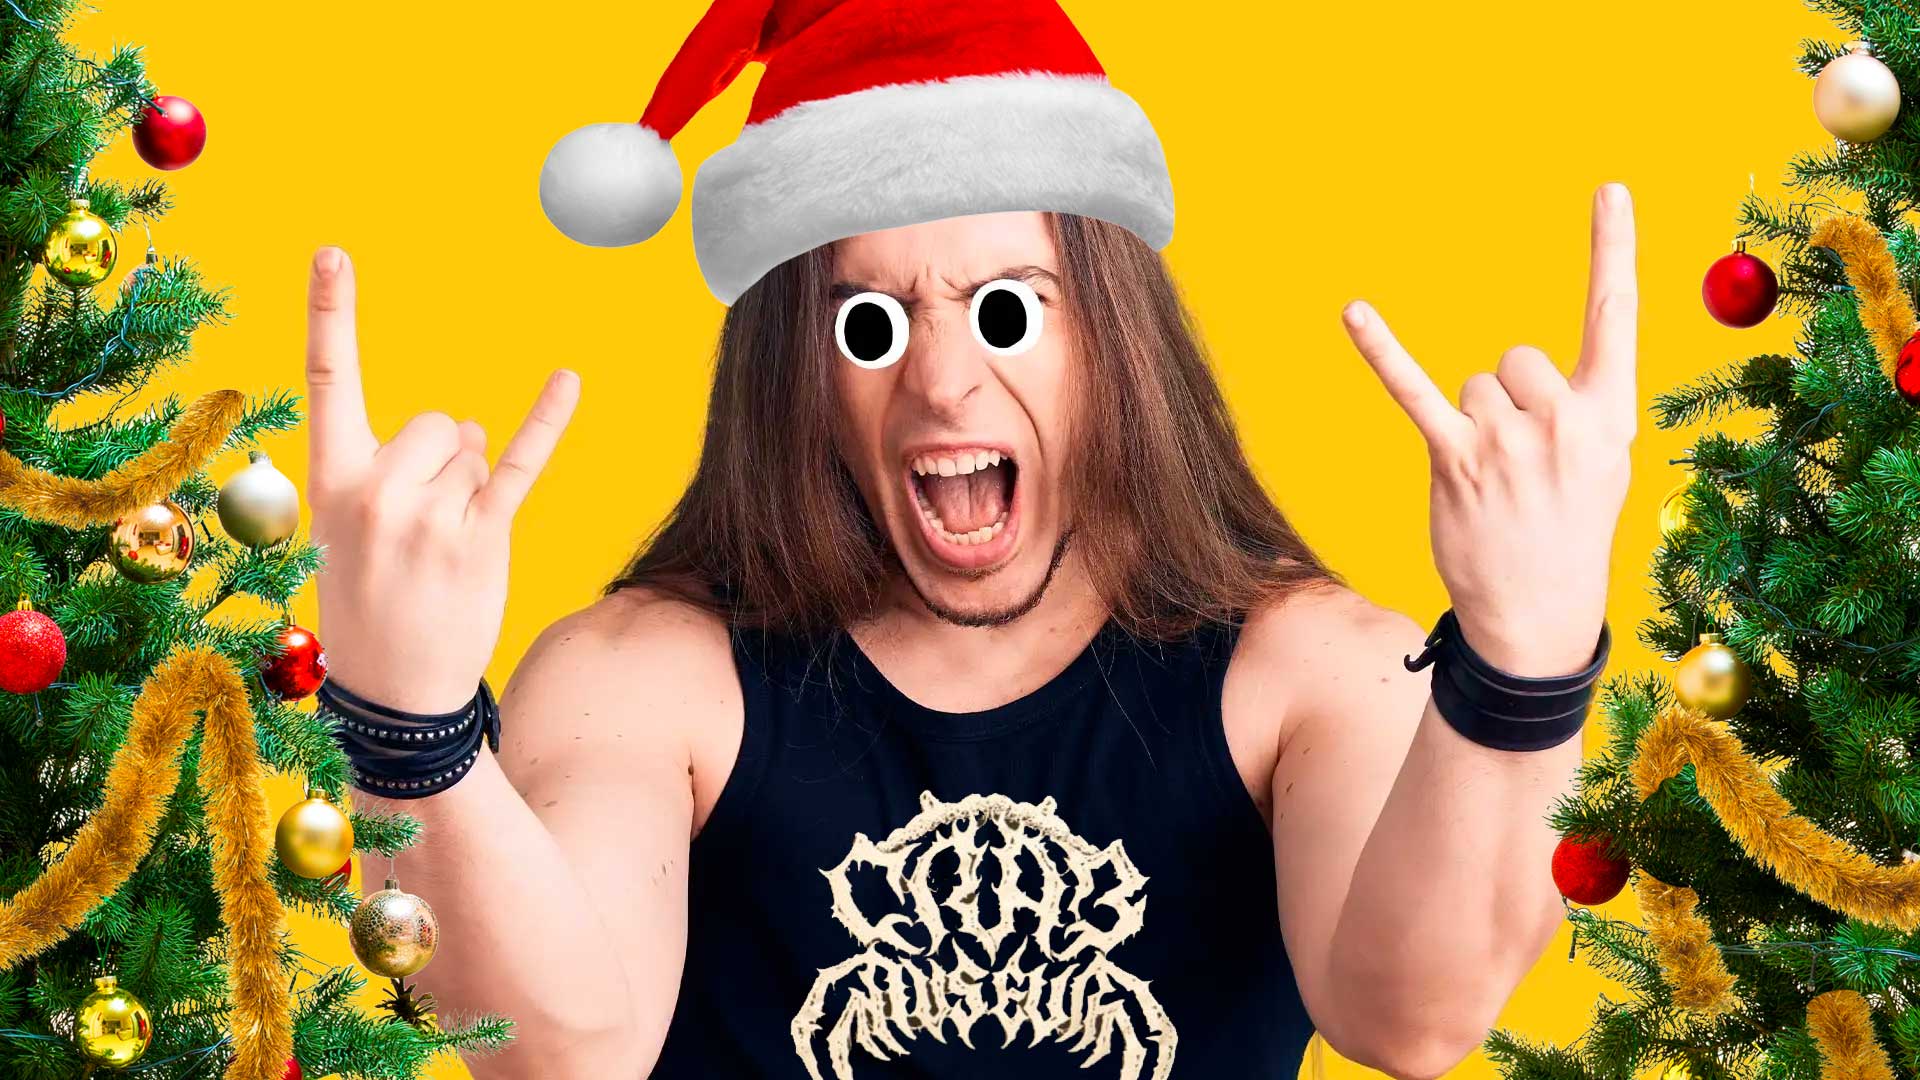 A rock fan enjoying Christmas